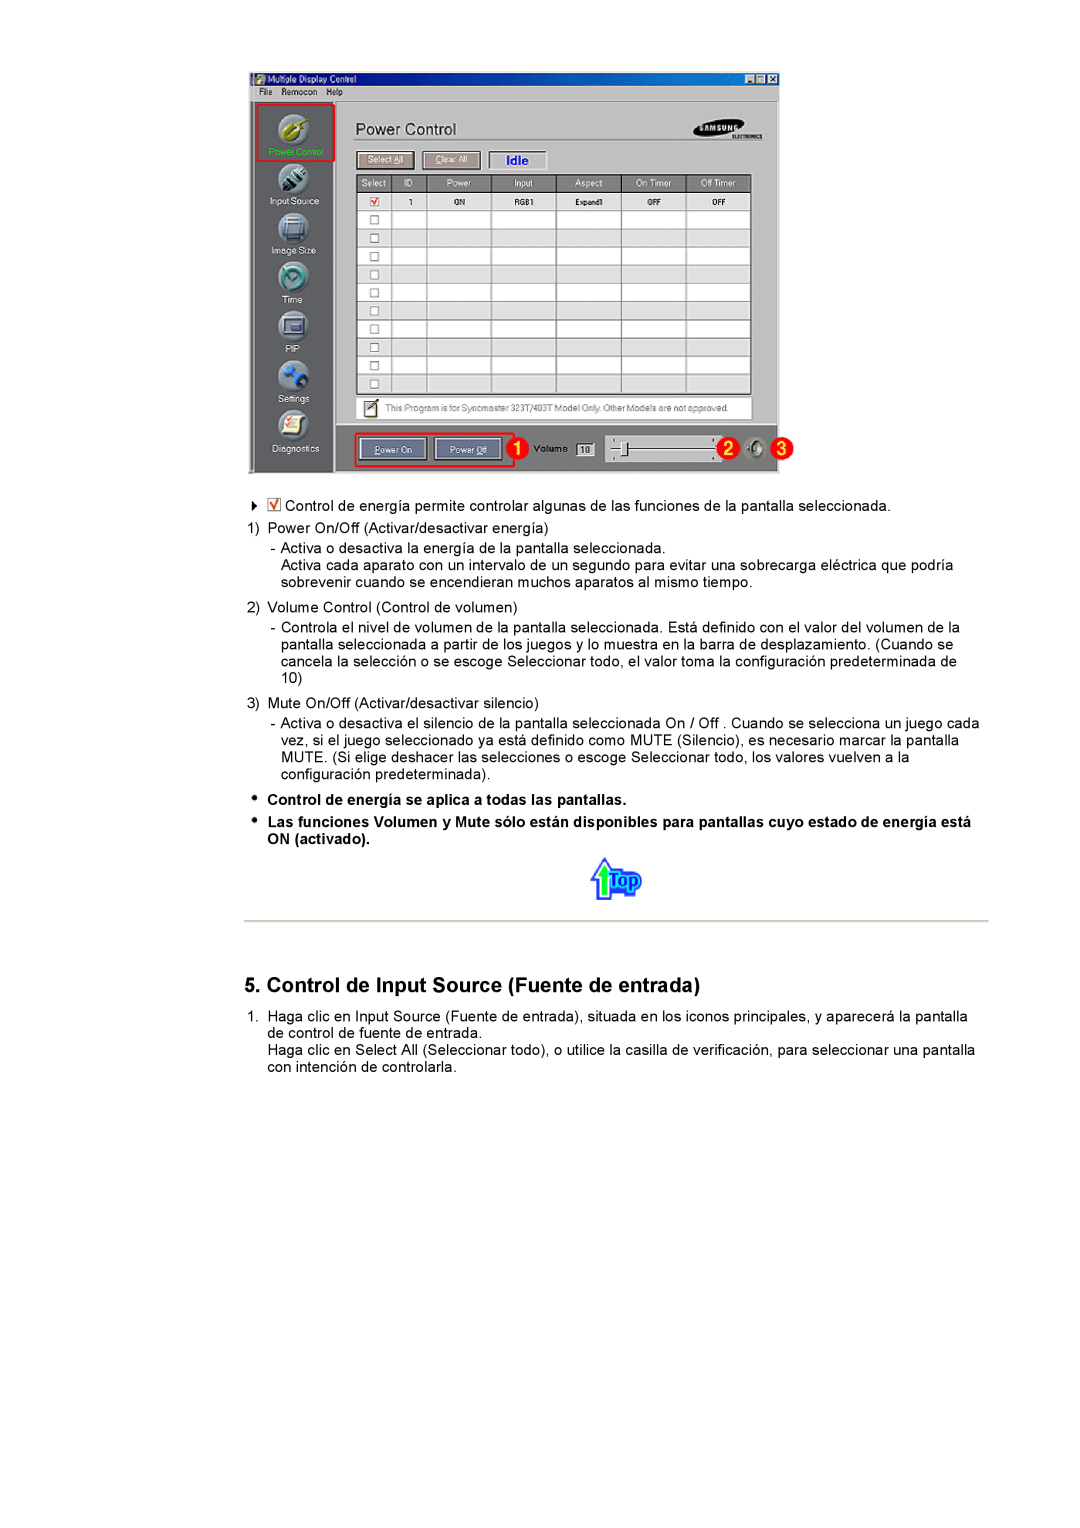 Samsung CK40PSNS/EDC manual Control de Input Source Fuente de entrada, Control de energía se aplica a todas las pantallas 